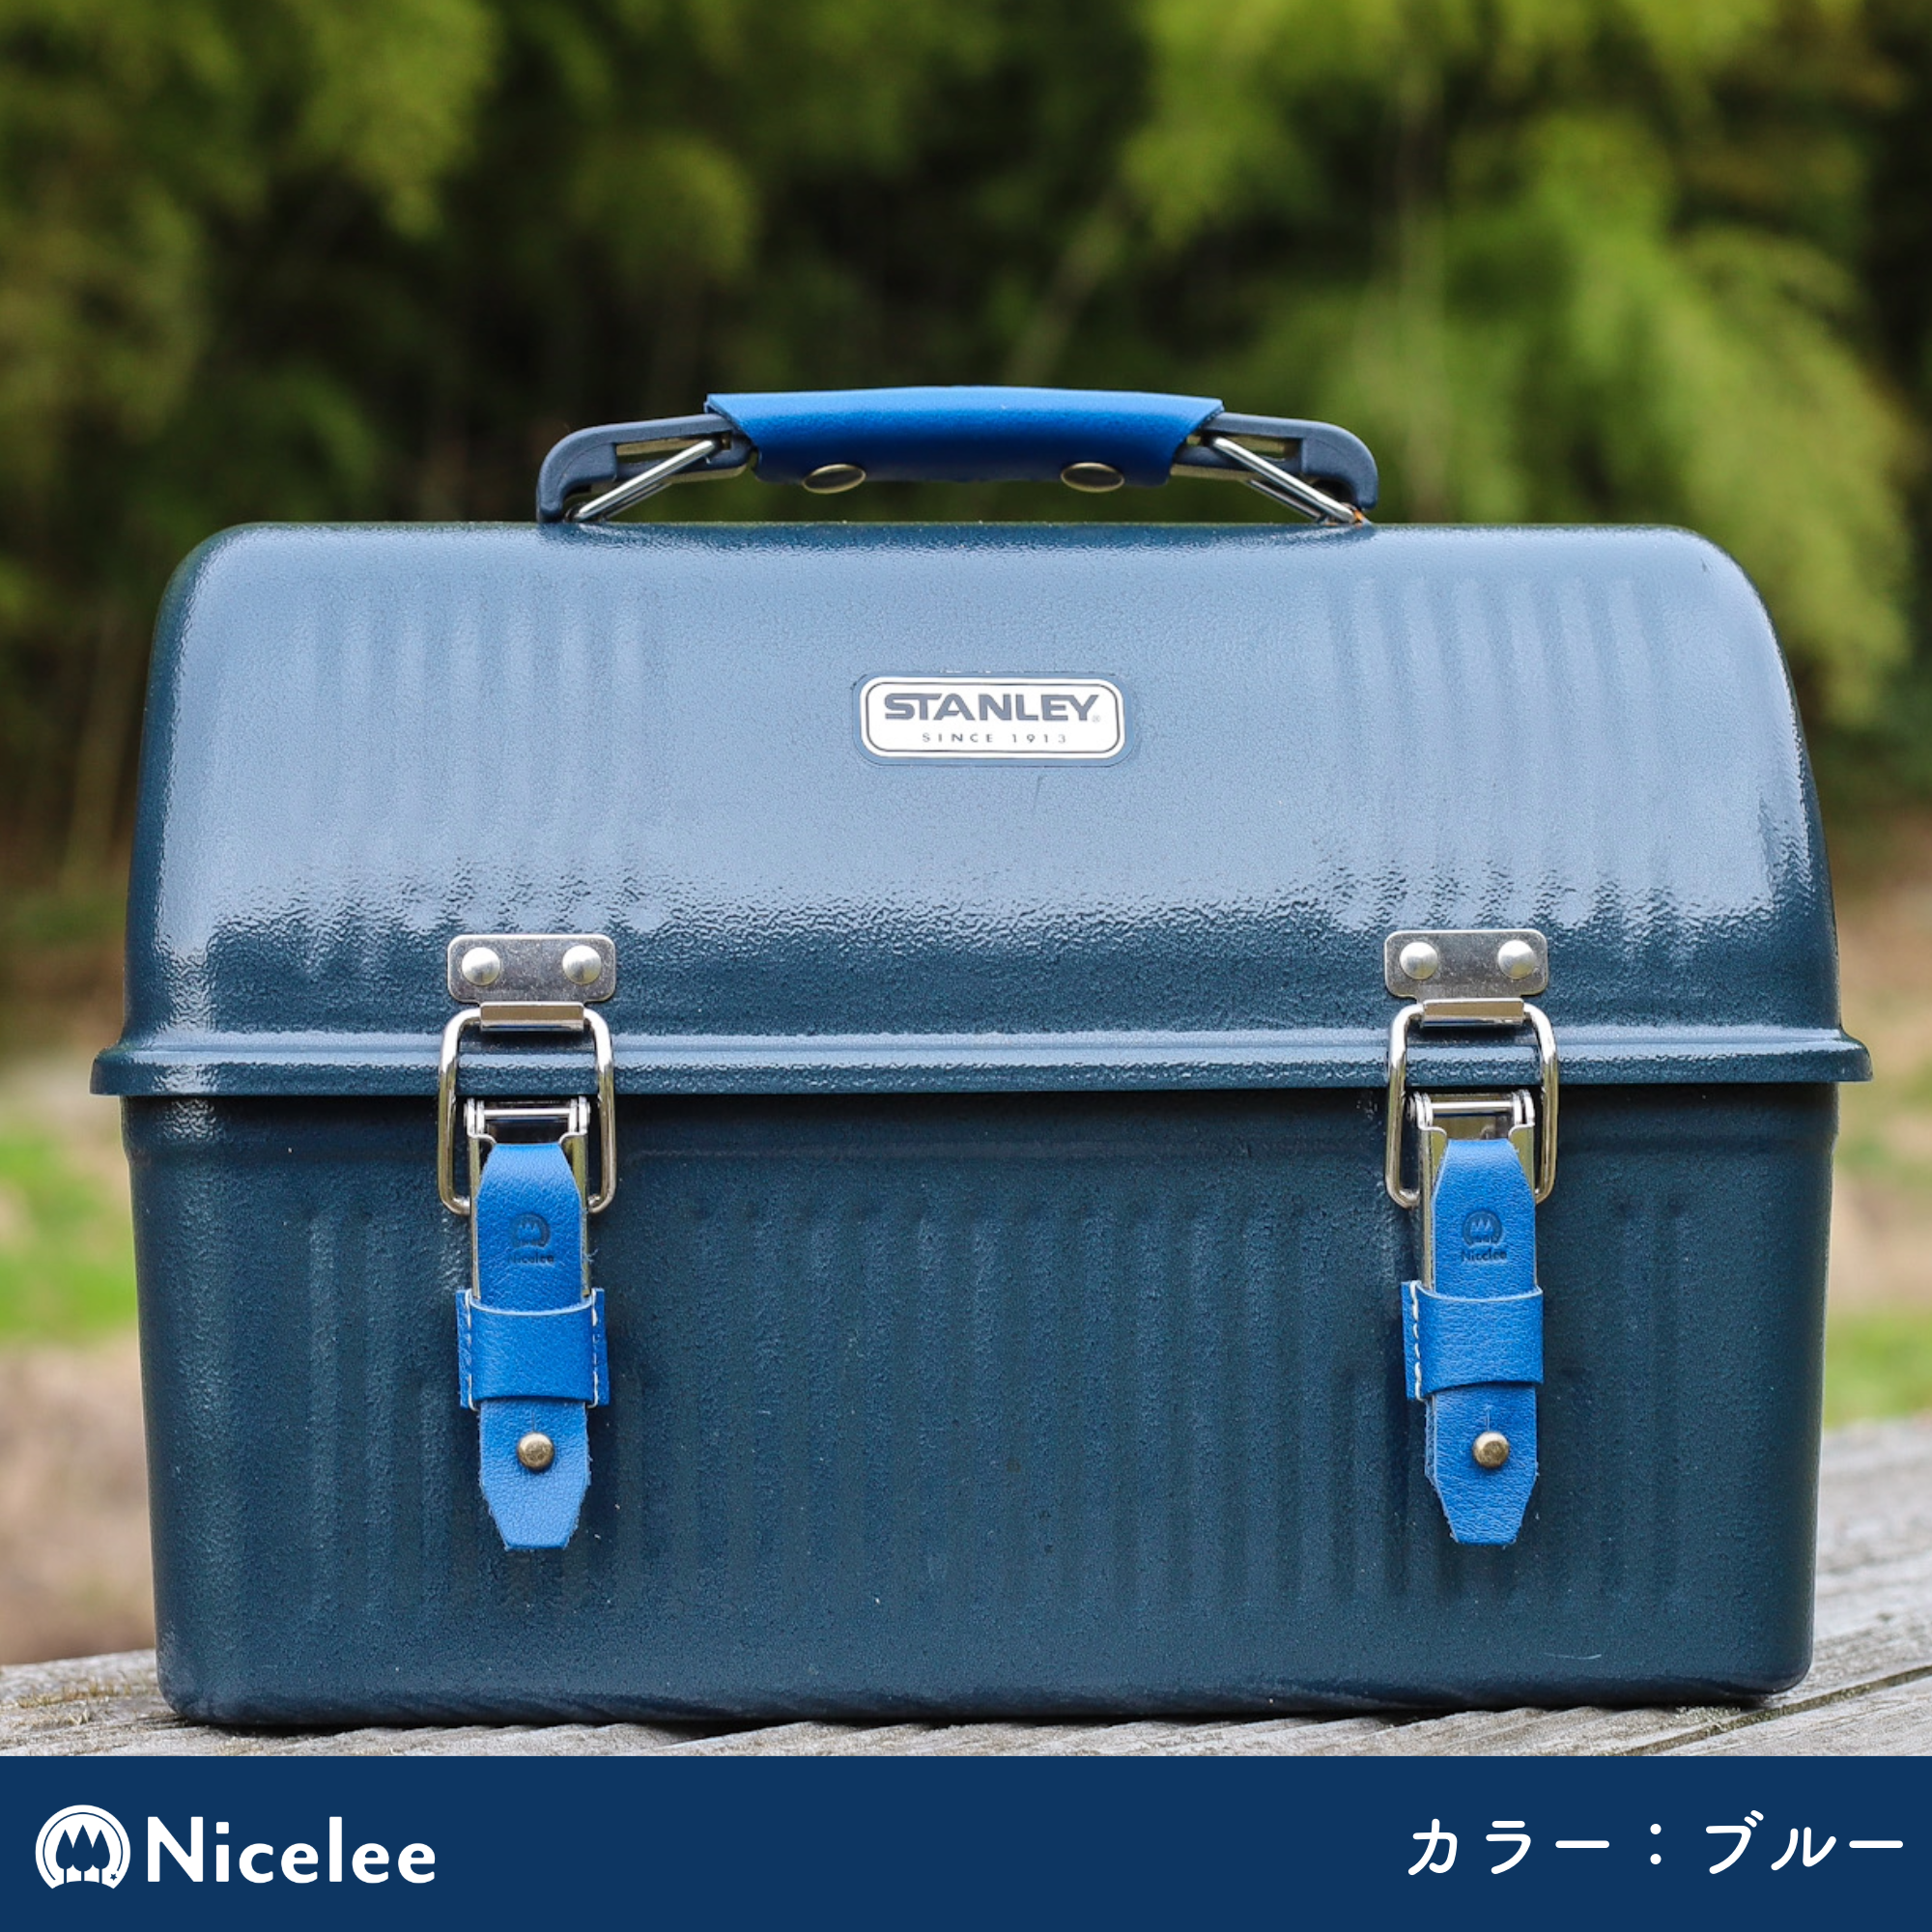 ナイスリー スタンレークラシックランチボックス9.4L用レザーカバー カスタム – ナイスリー（Nicelee）公式オンラインショップ